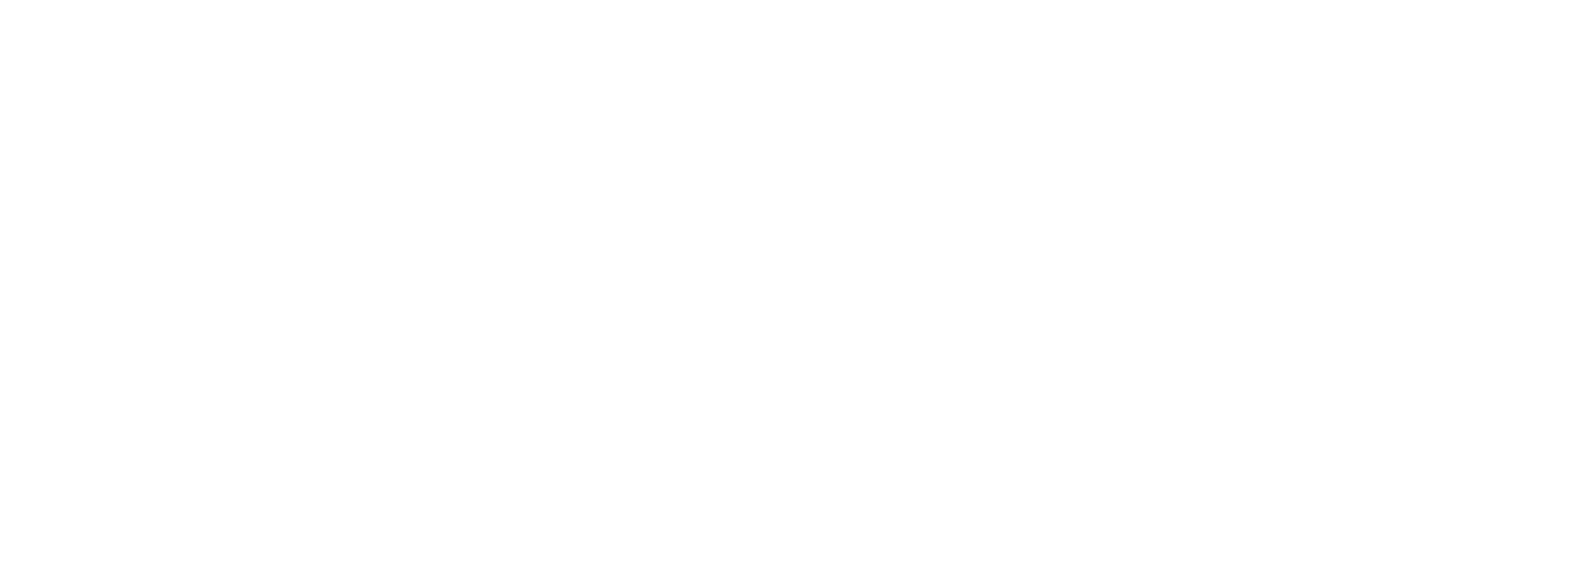 Zymeworks logo large for dark backgrounds (transparent PNG)